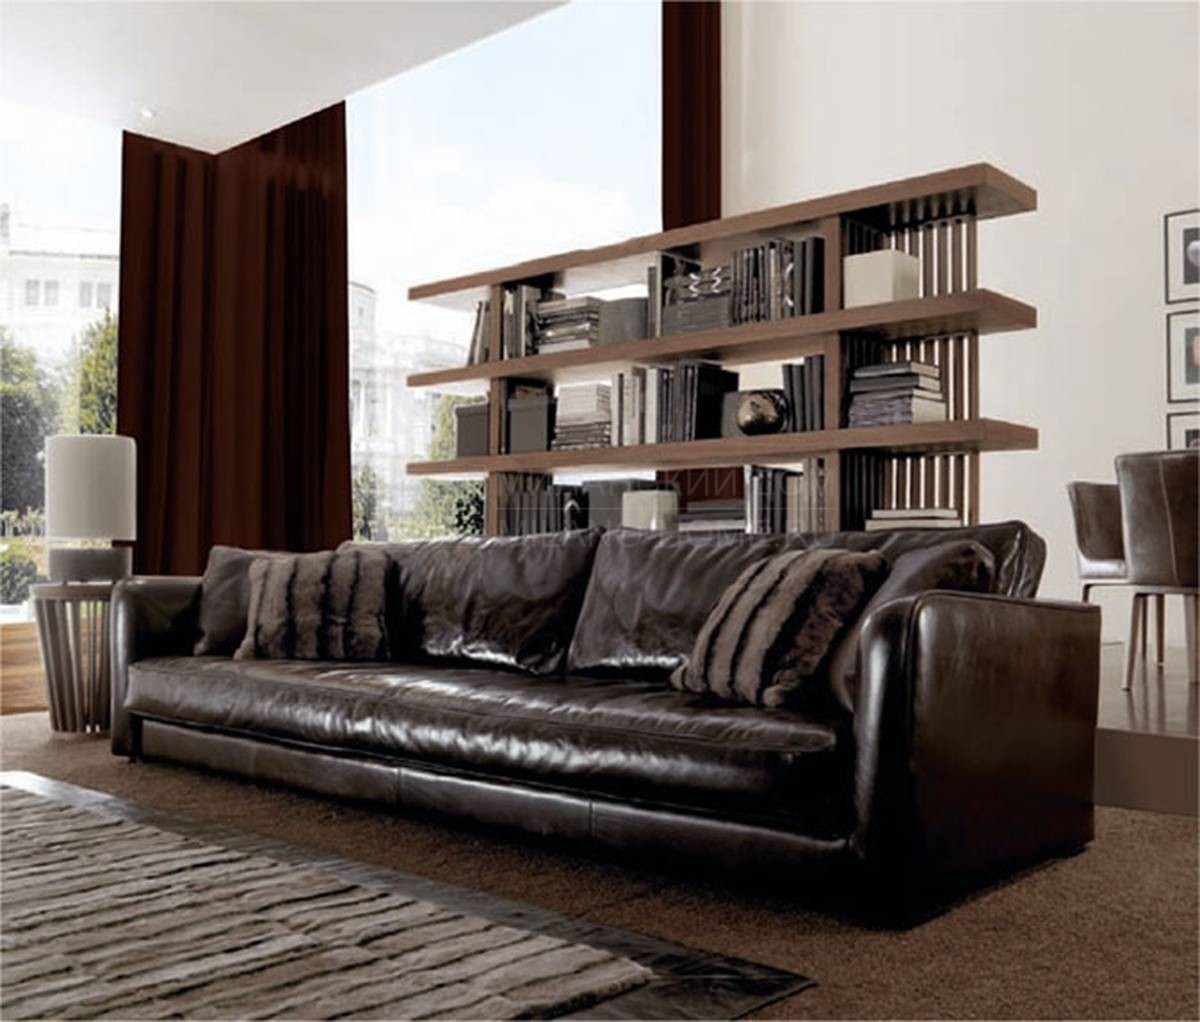 Прямой диван Tommy Leather Sofa из Италии фабрики ULIVI